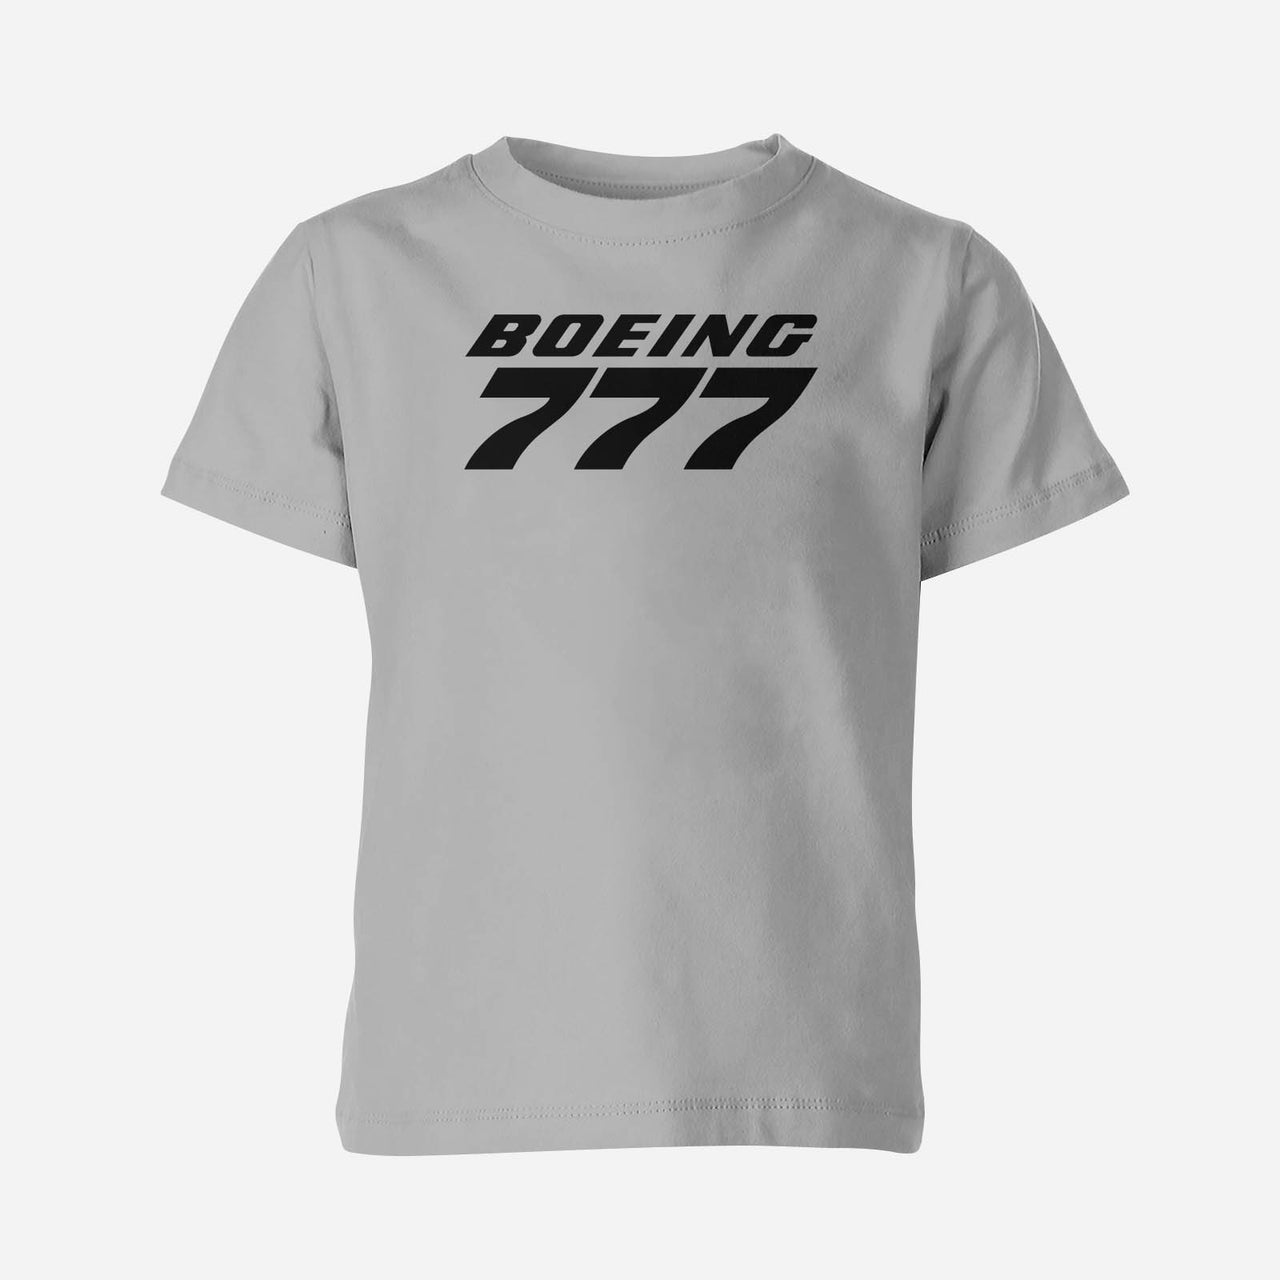 Boeing 777 & Text Designed Children T-Shirts